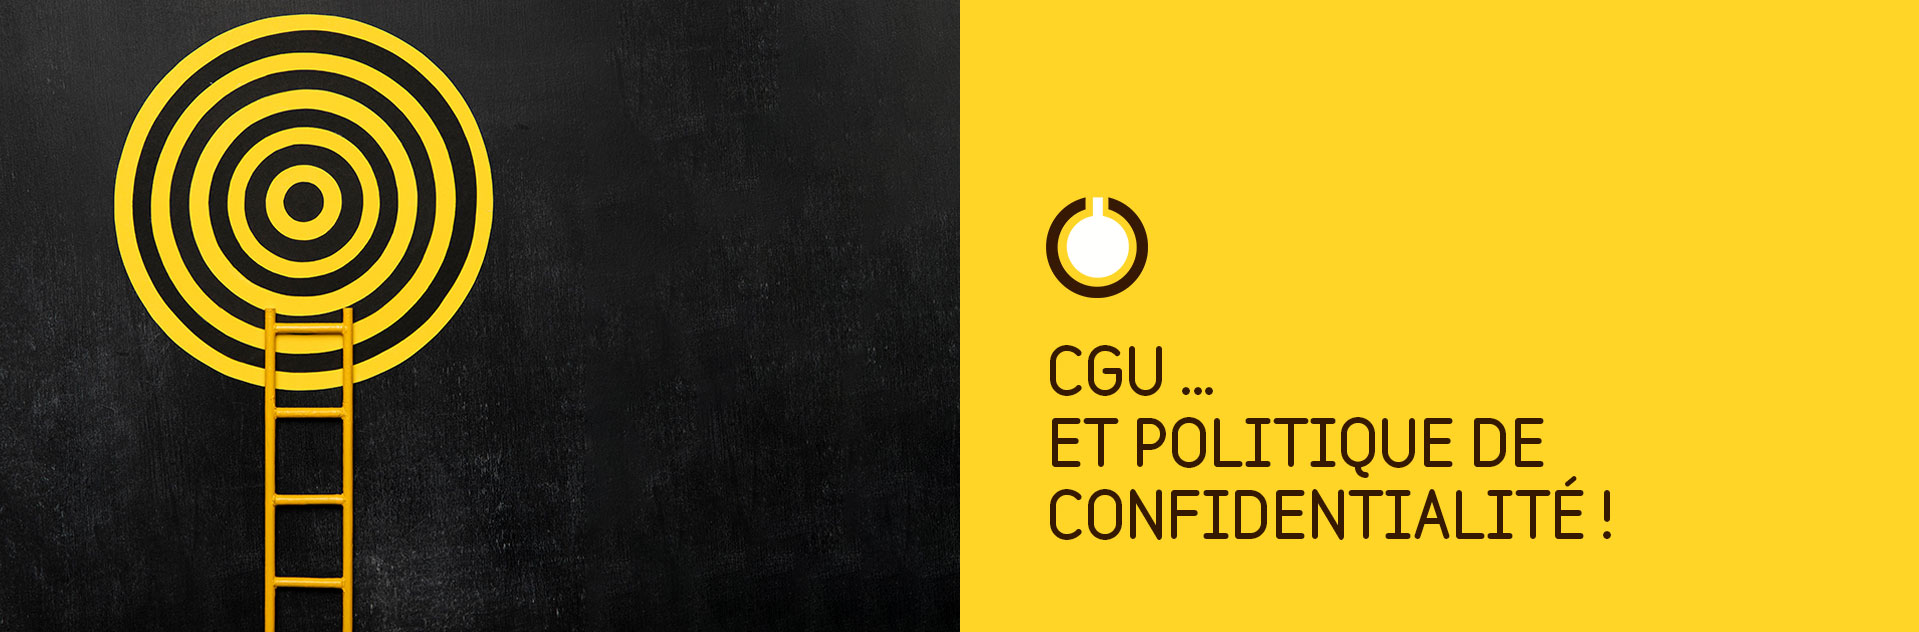 CGV- CGU & Politique de confidentialité